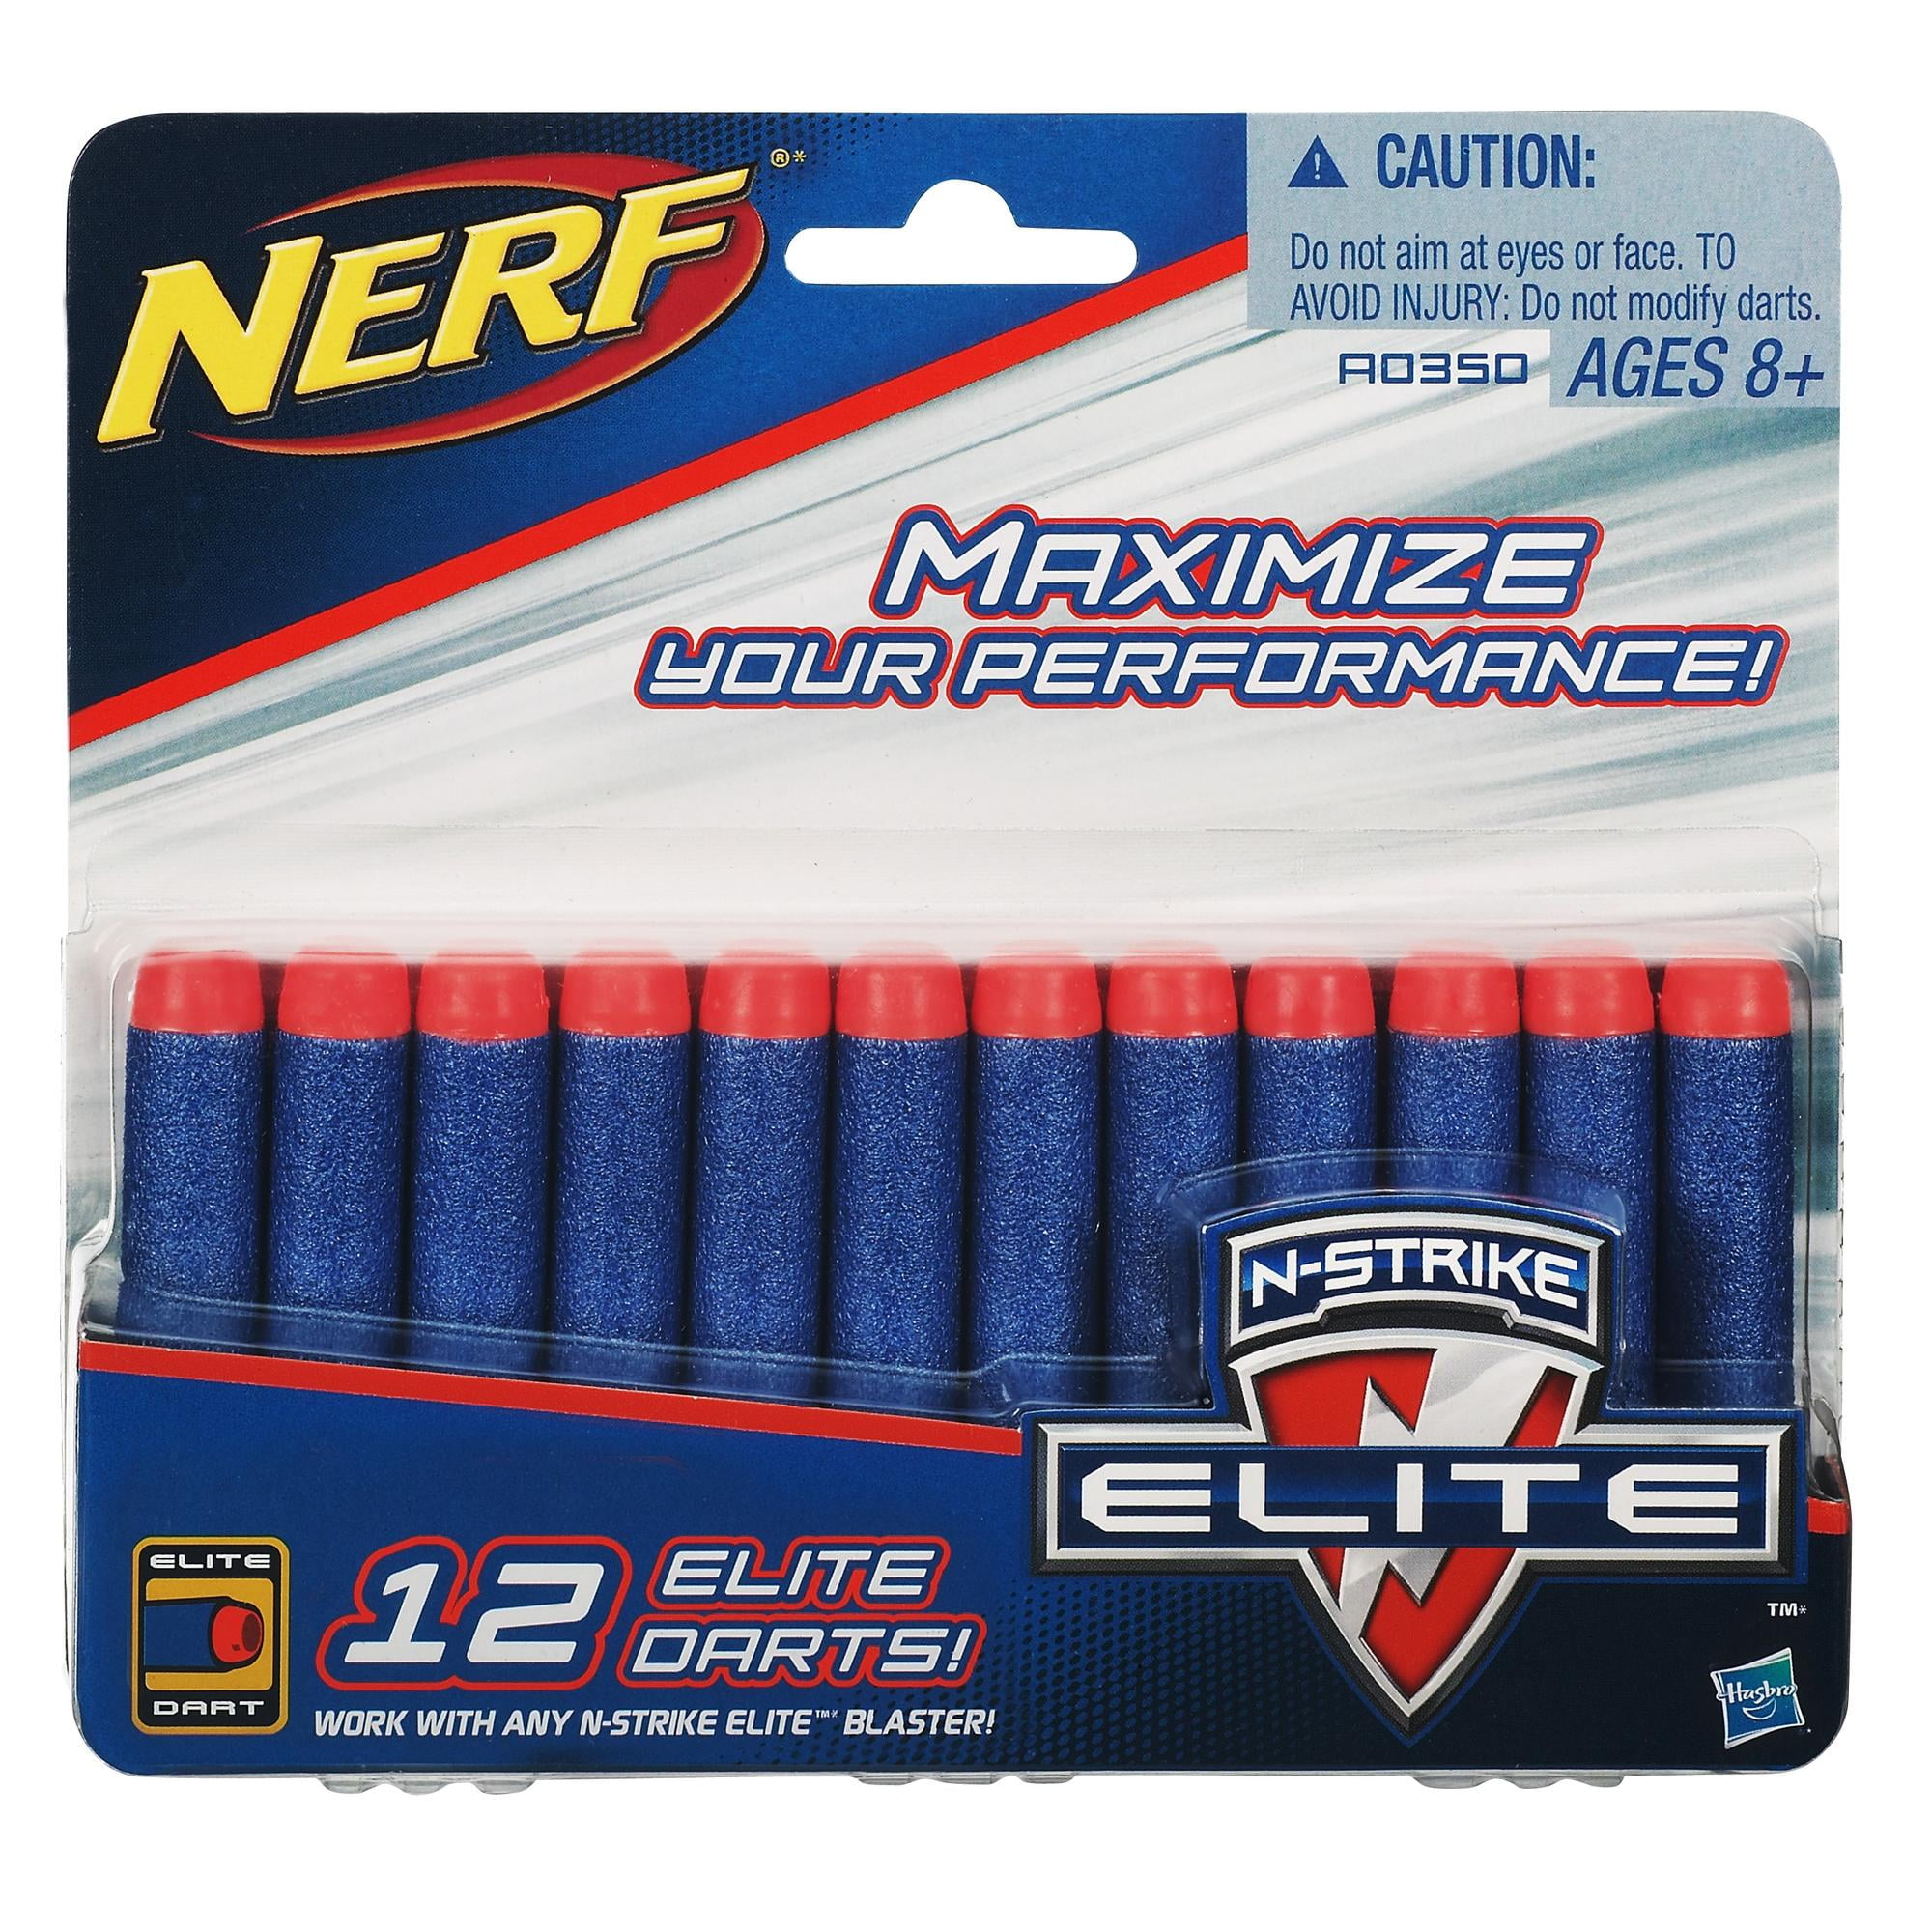 Foster Guinness Playful Nerf N-Strike Elite Dart Refill Pack - Walmart.com